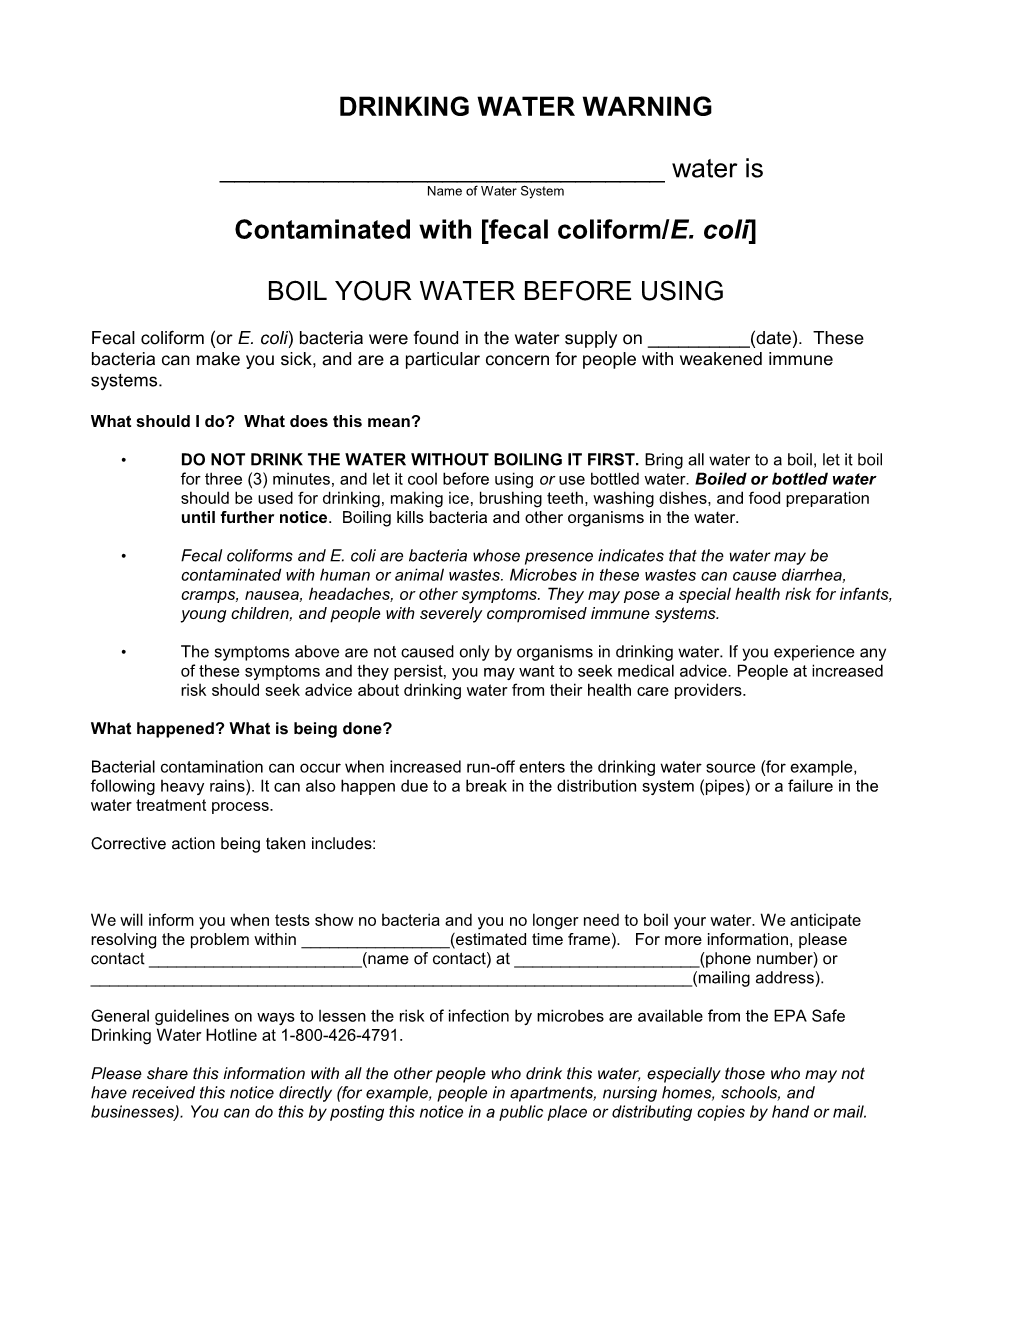 Contaminated with Fecal Coliform/E. Coli